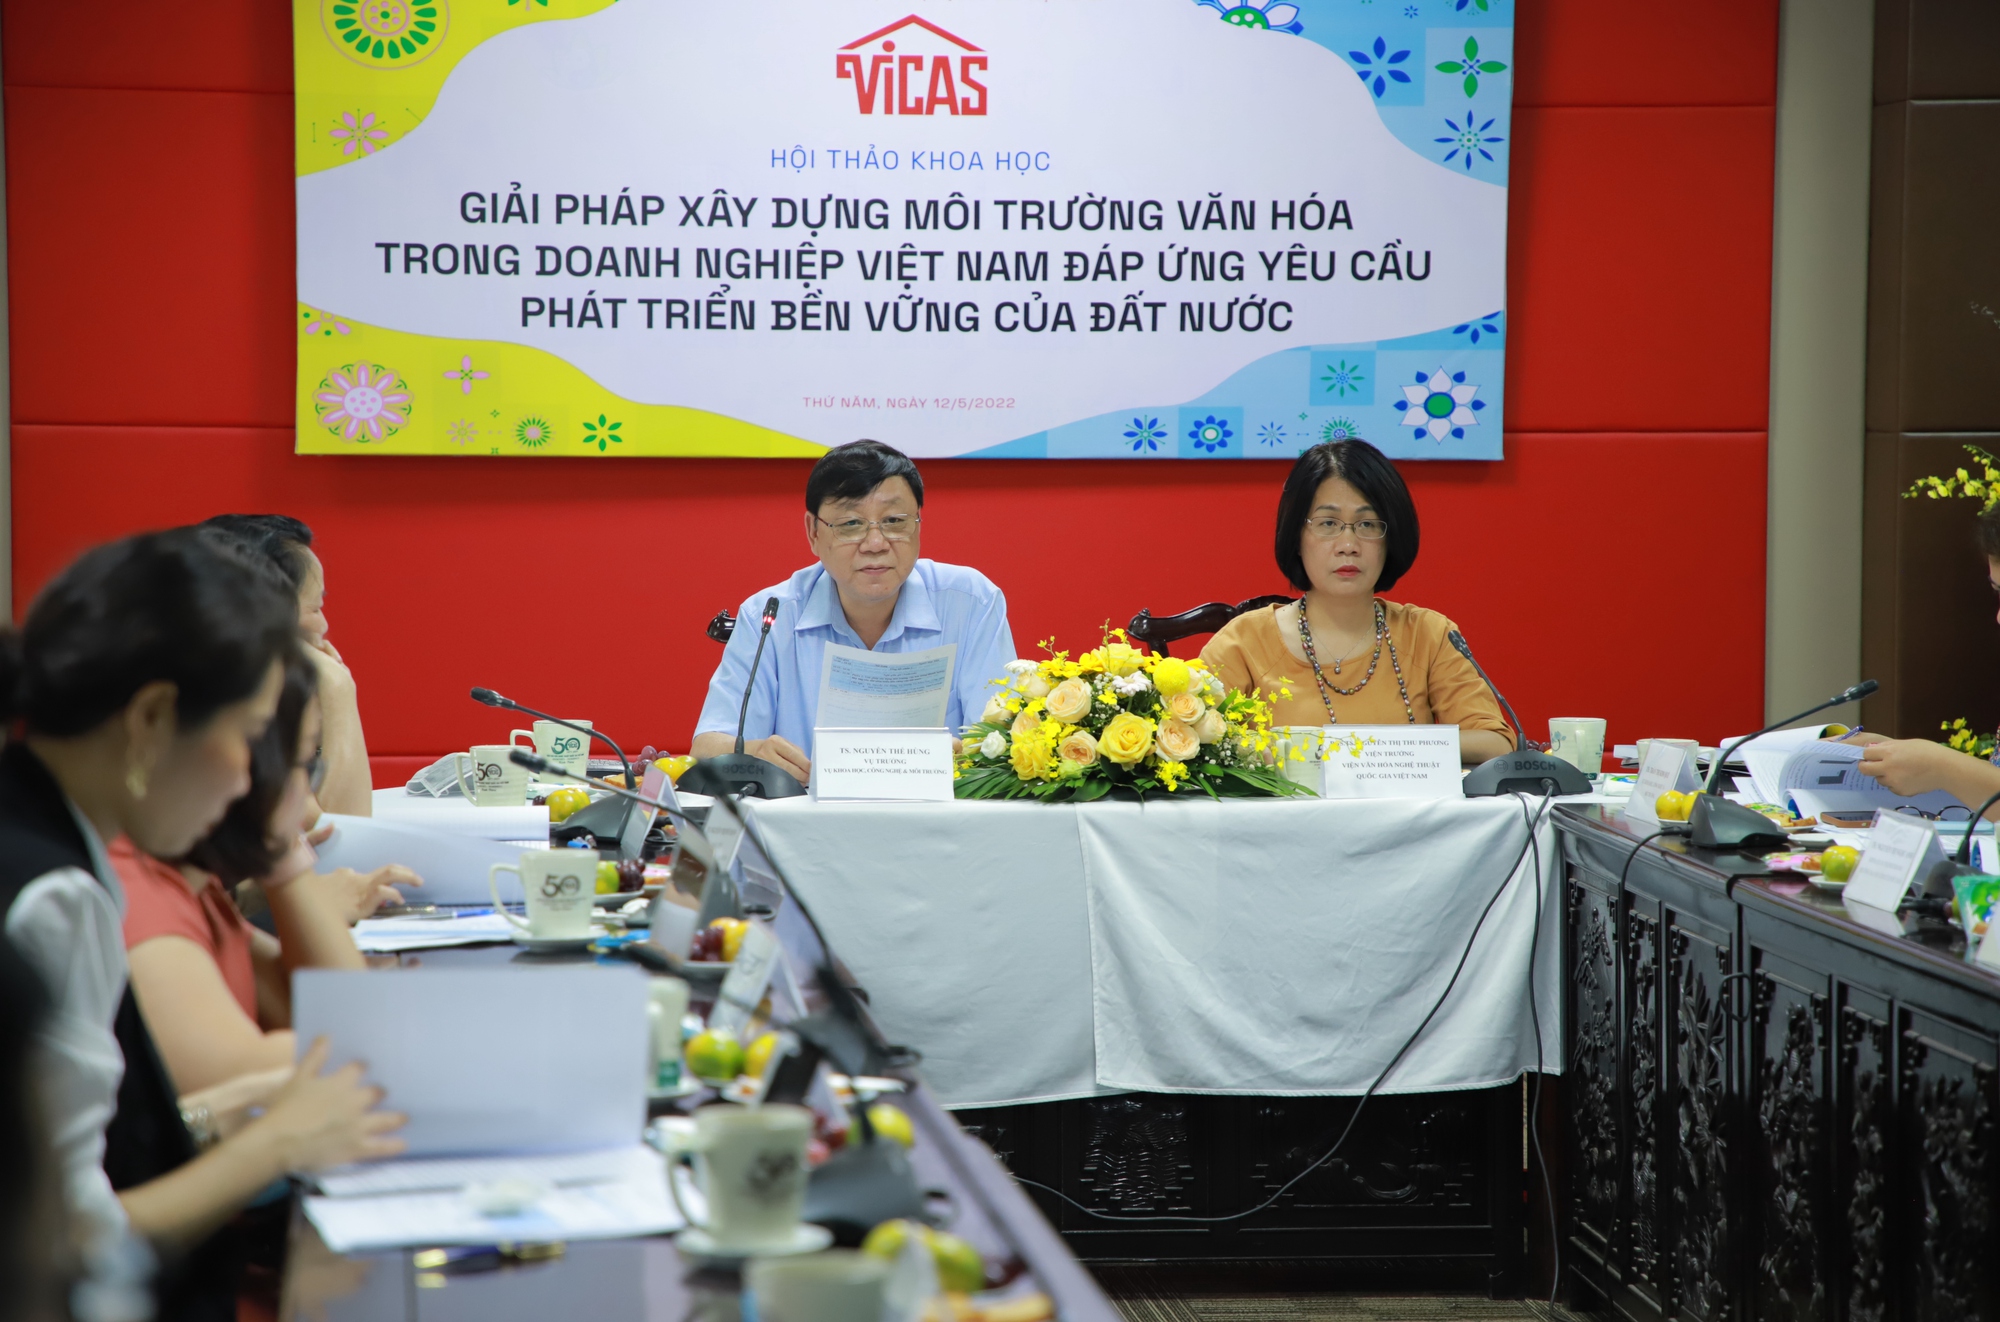 Xây dựng môi trường văn hóa tạo động lực và sức mạnh nội sinh để doanh nghiệp Việt Nam vượt khó - Ảnh 1.